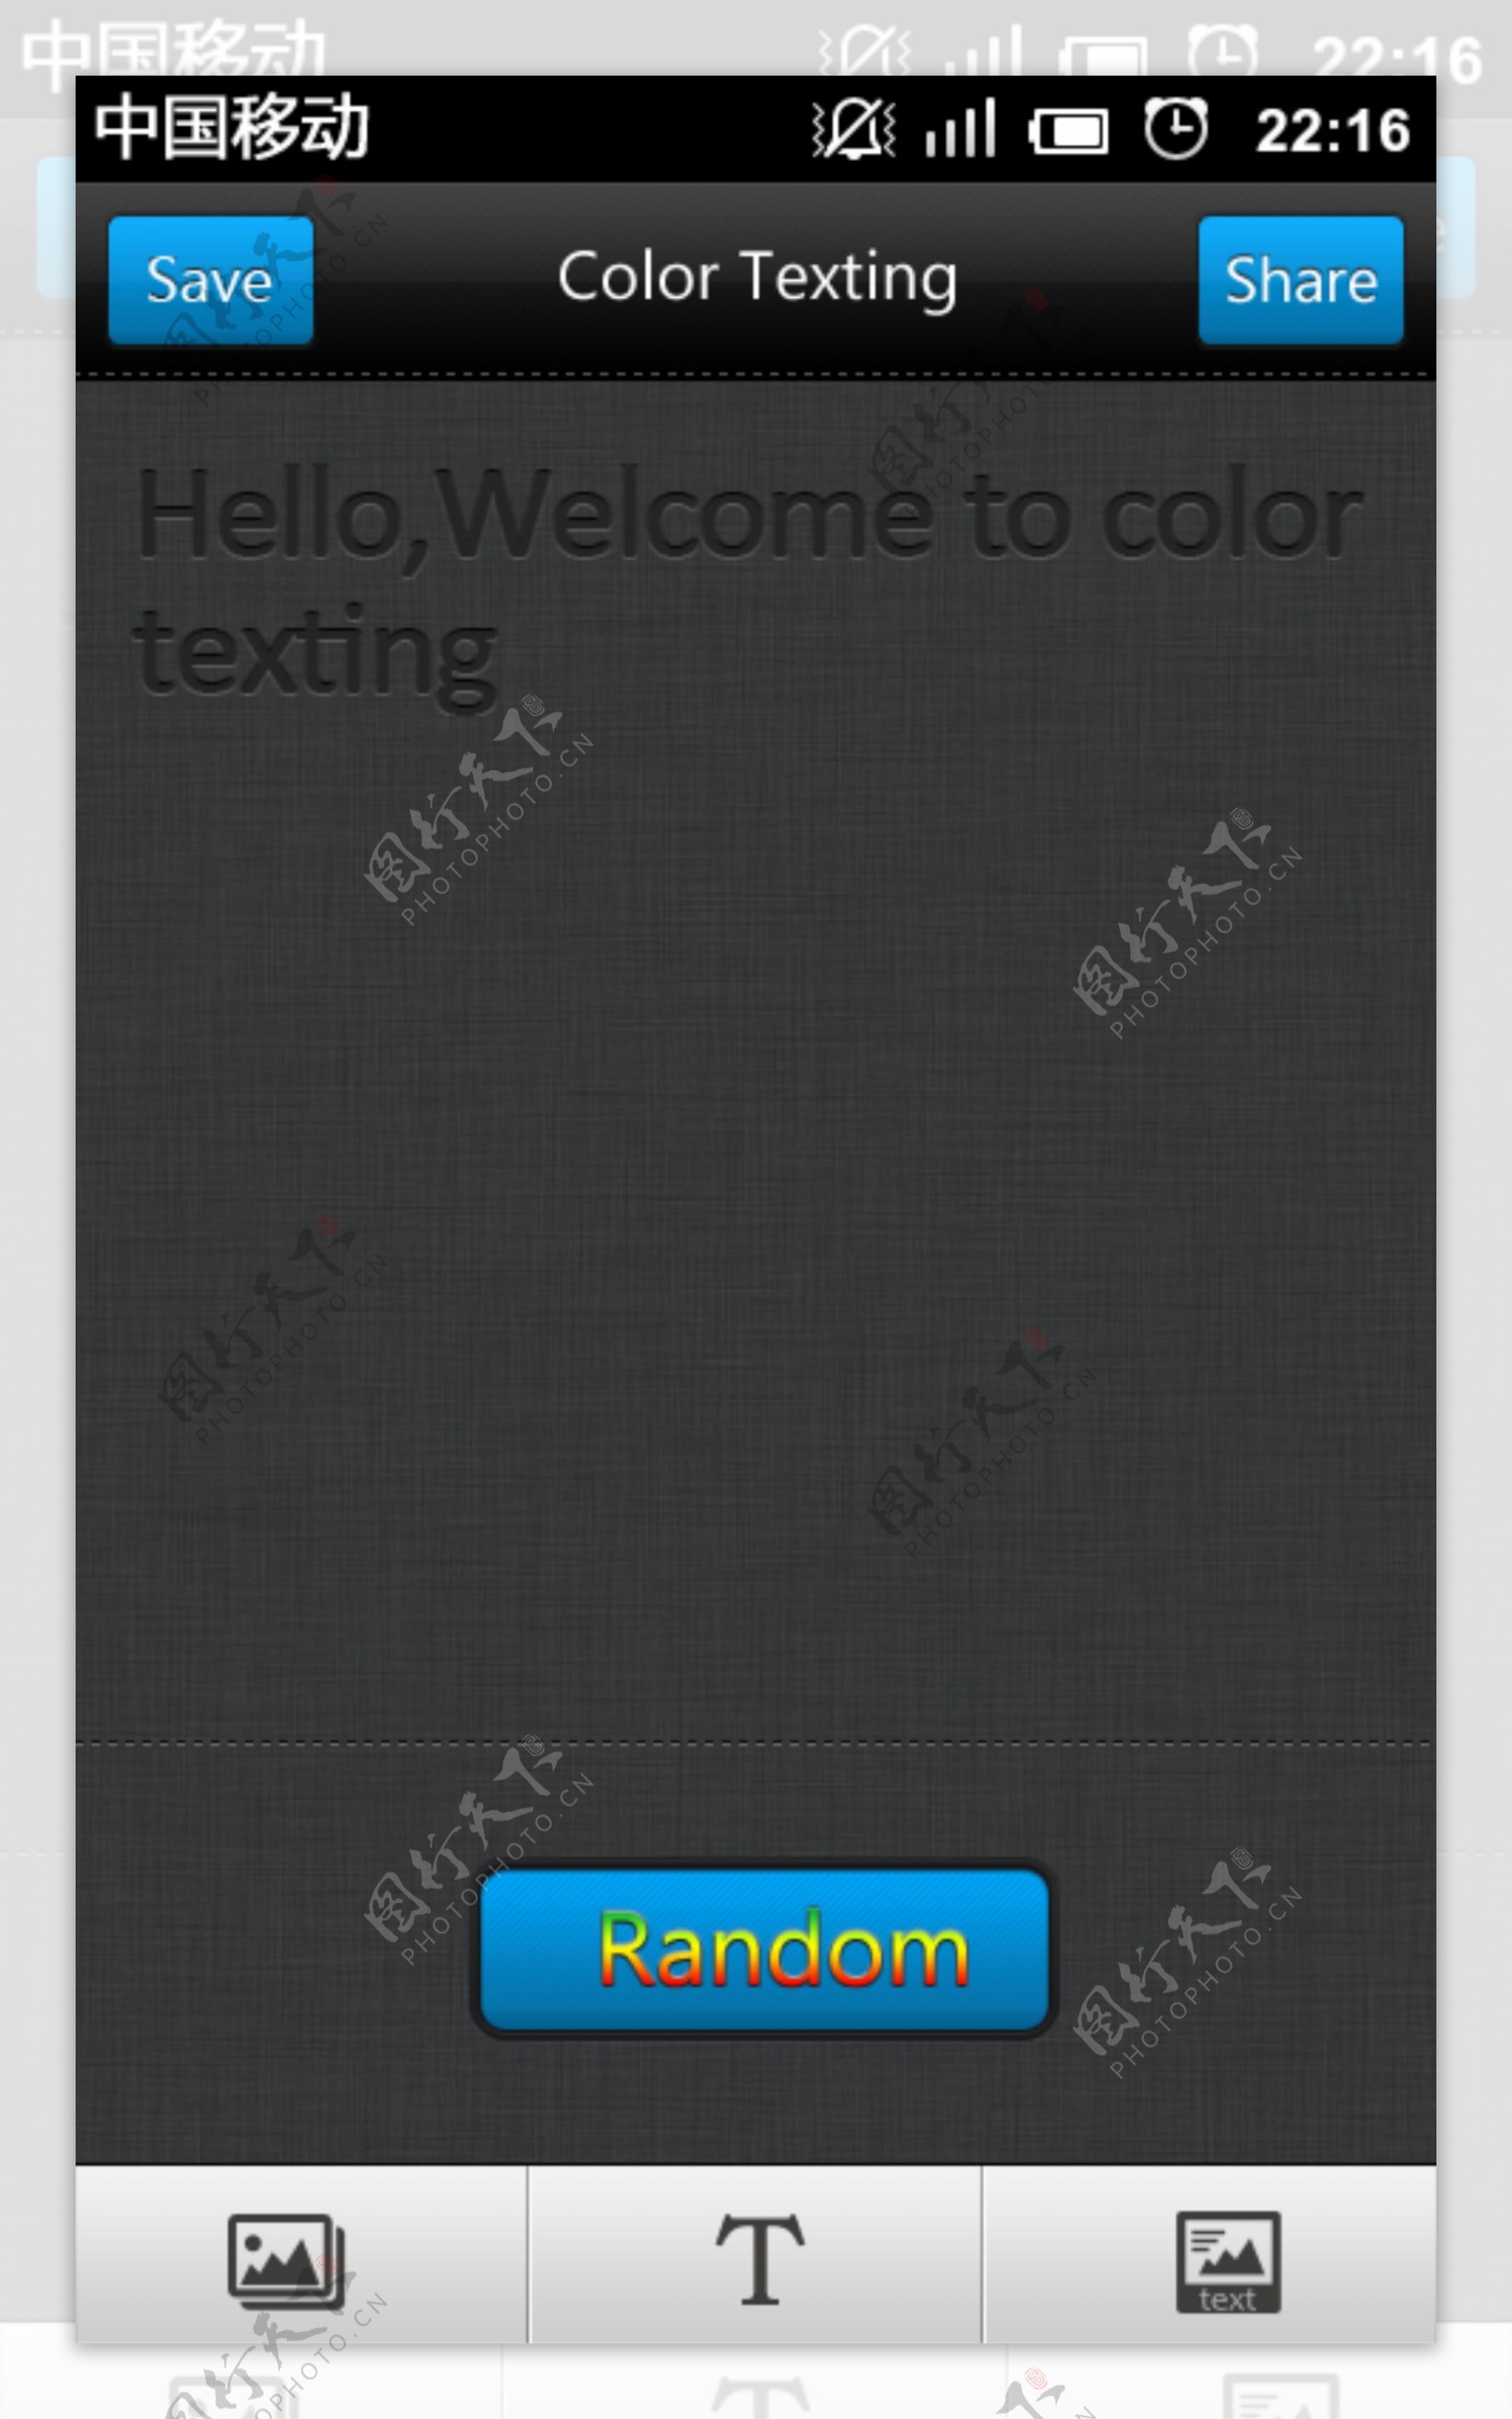 colortexting手机界面首页图片